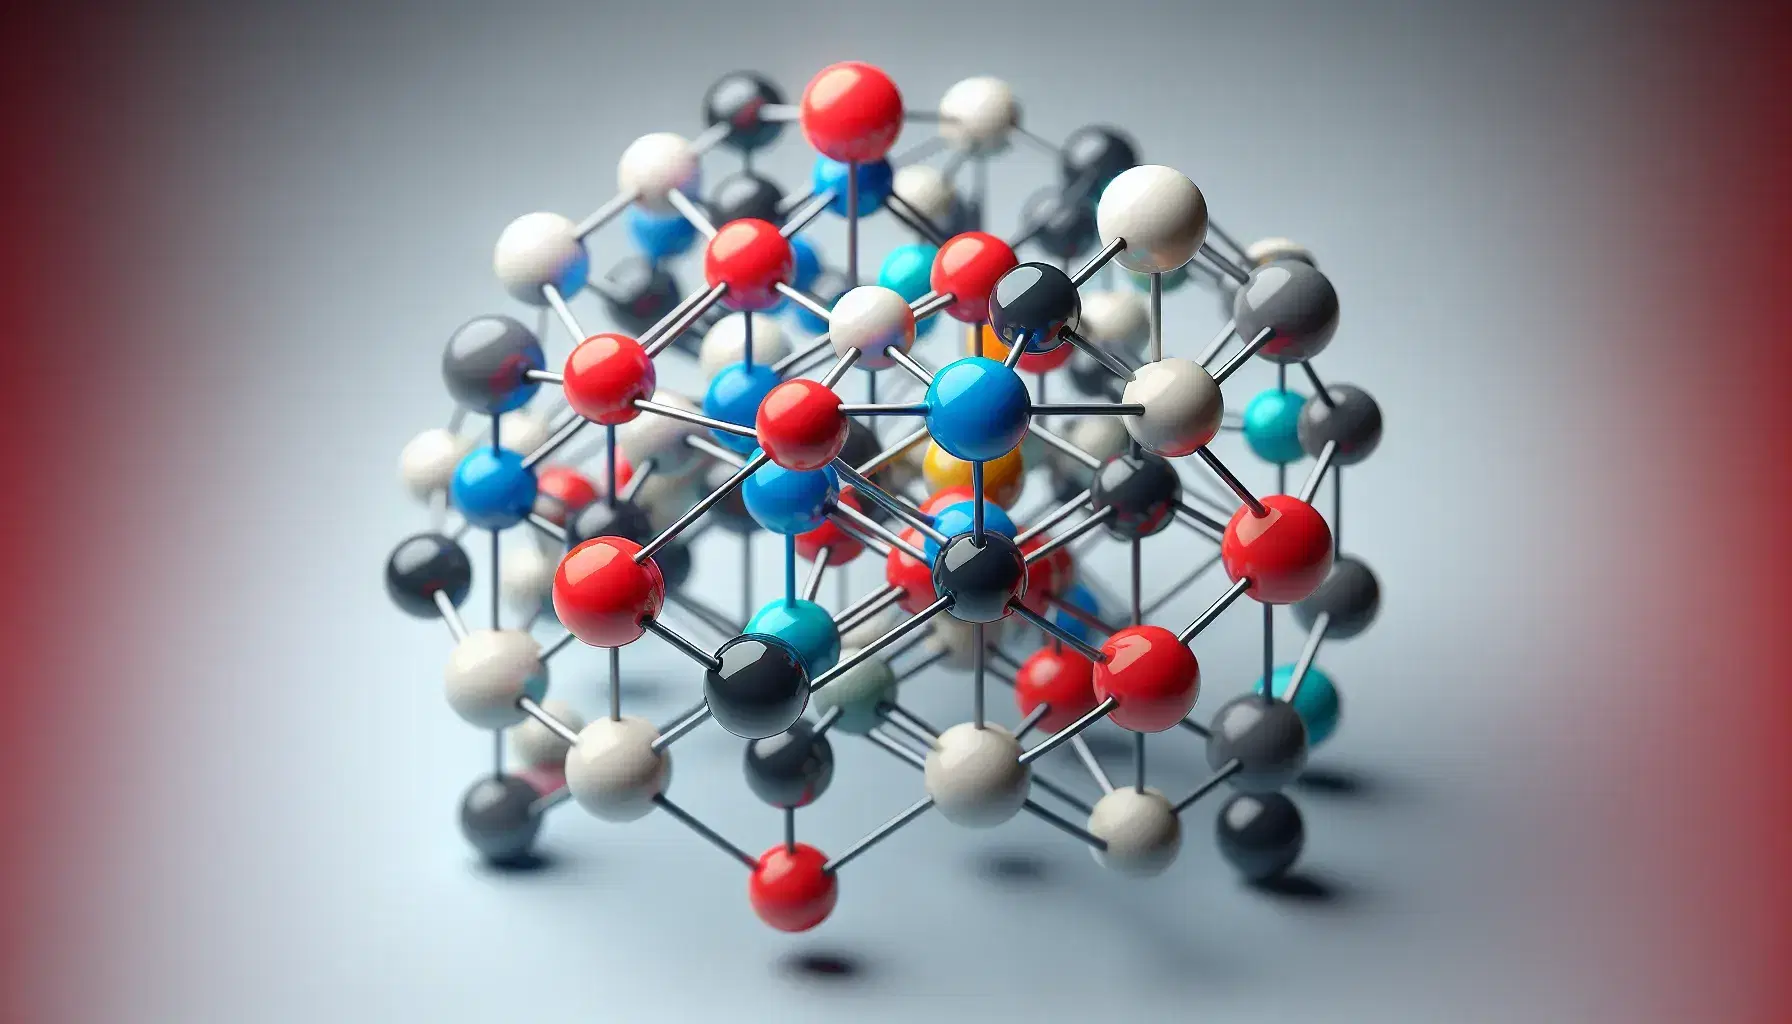 Estructura tridimensional de molécula con esferas de colores rojo, azul, blanco y negro unidas por varillas grises, en fondo neutro.